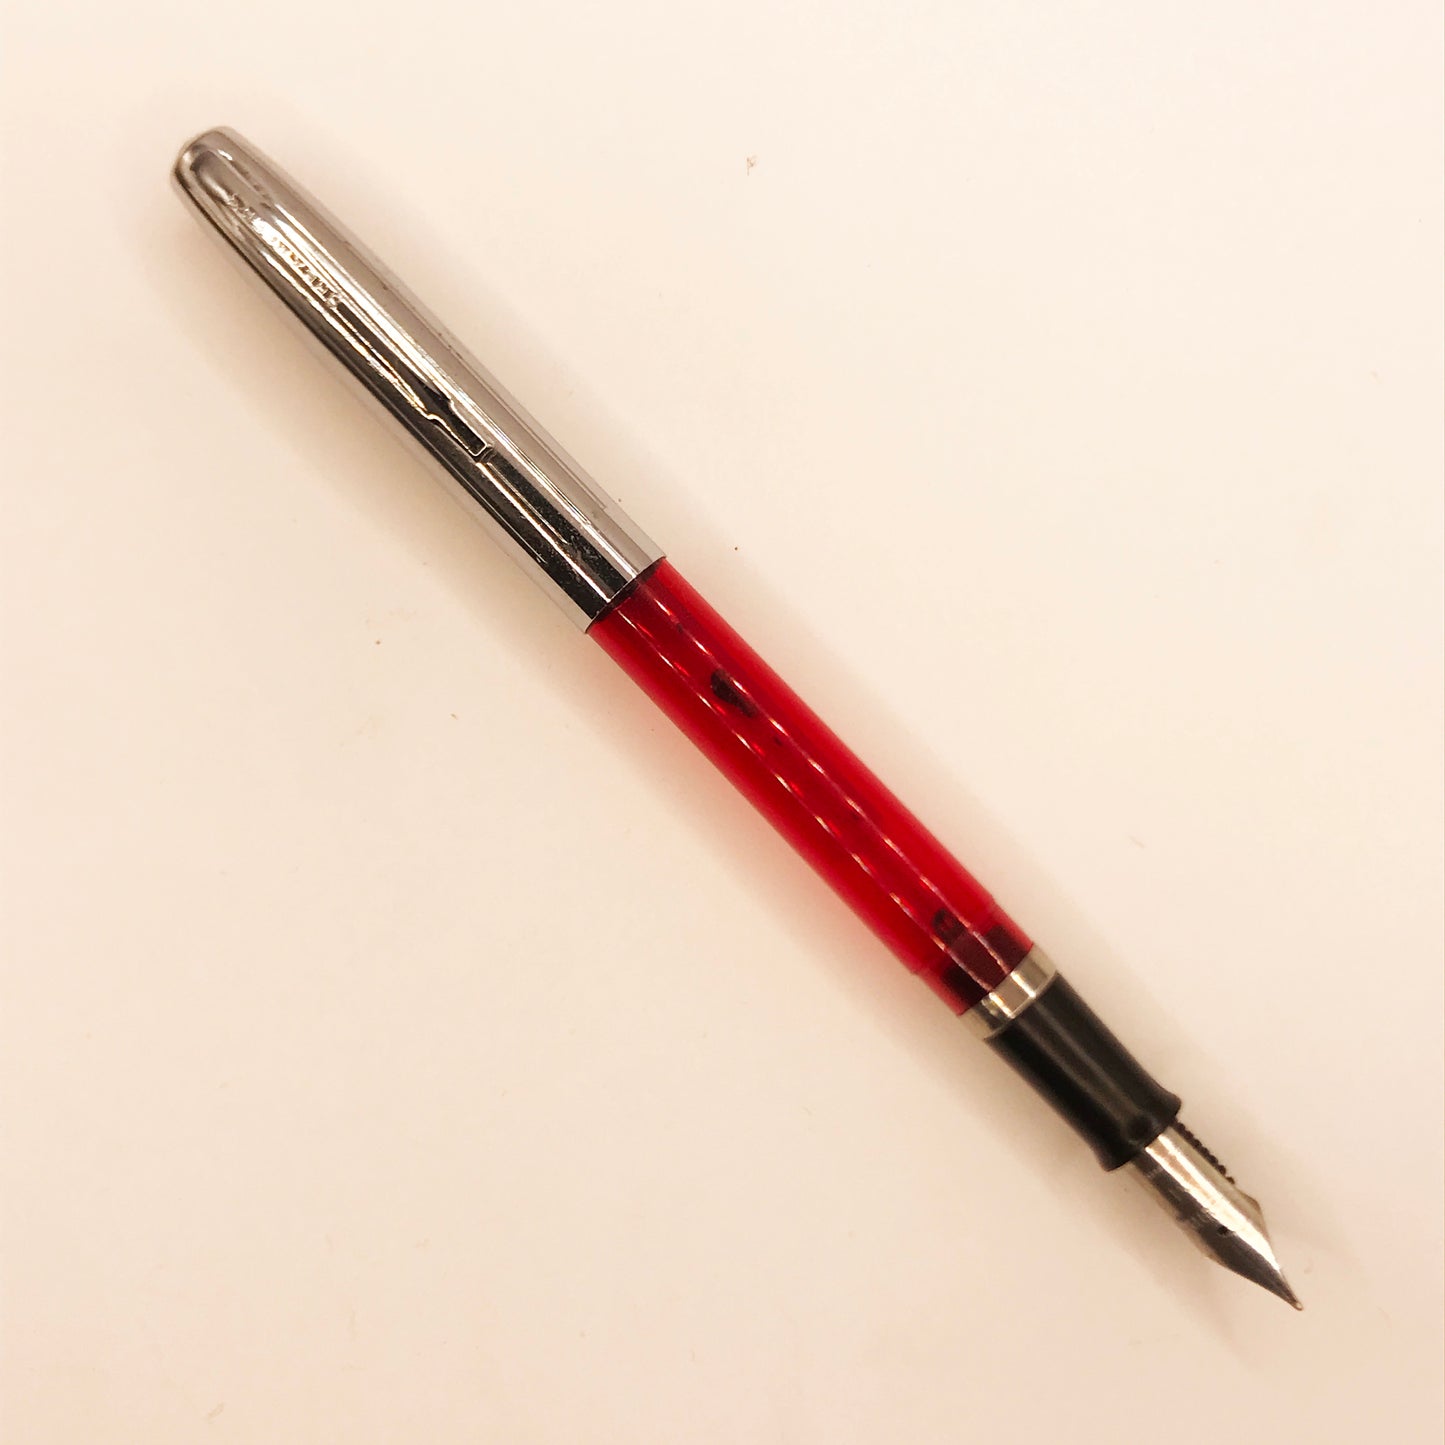 Sheaffer School pen